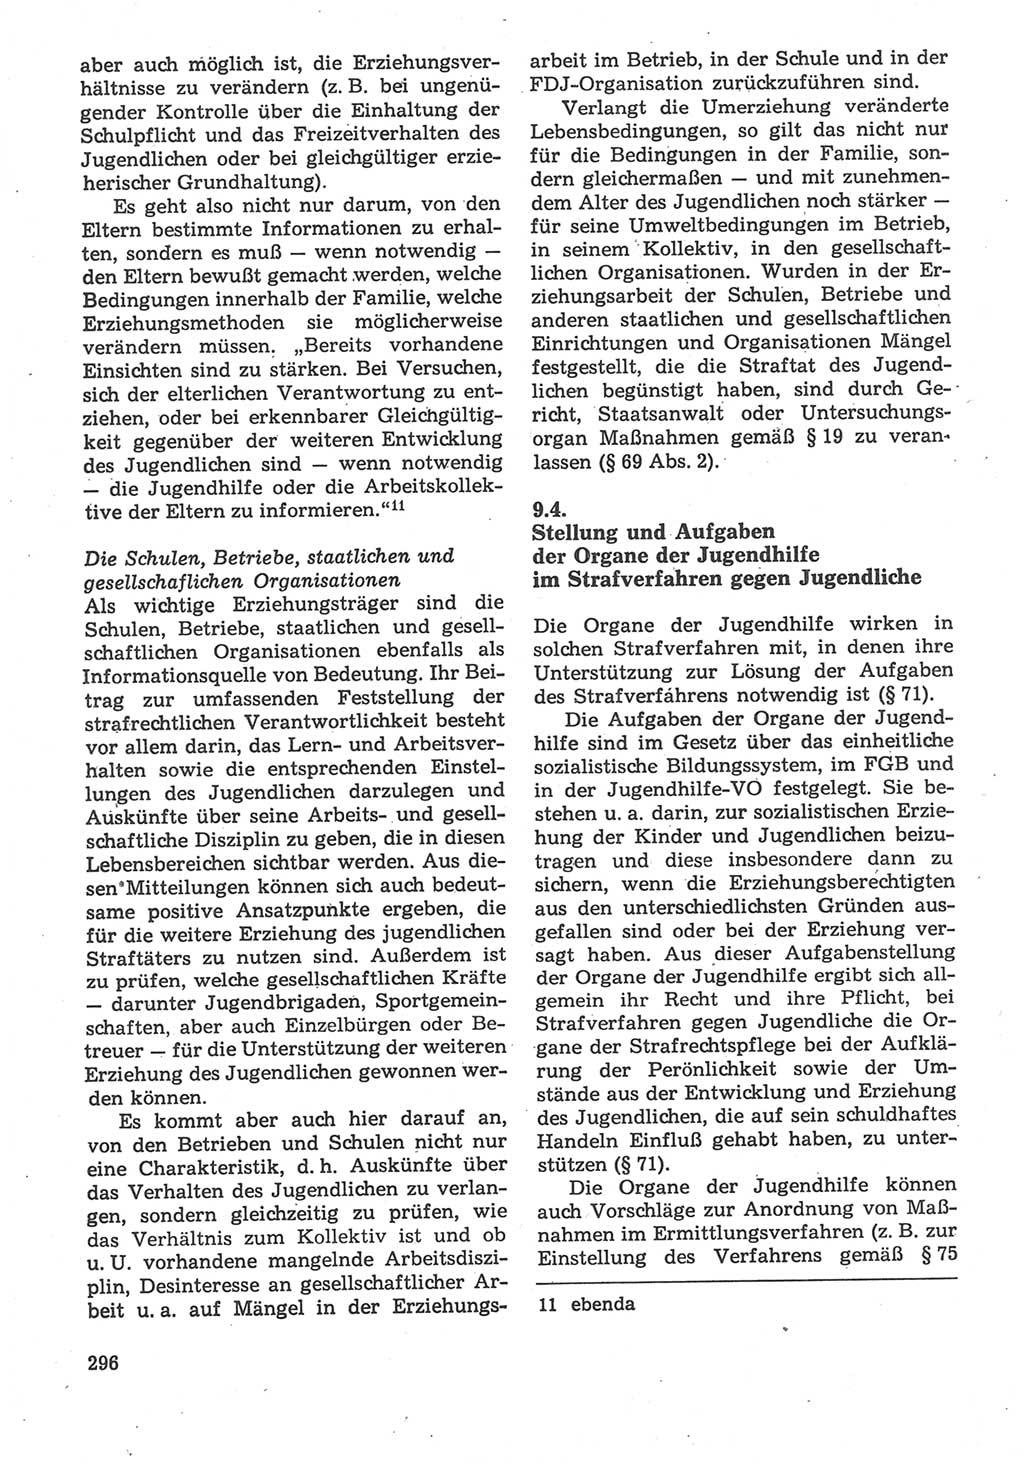 Strafverfahrensrecht [Deutsche Demokratische Republik (DDR)], Lehrbuch 1987, Seite 296 (Strafverf.-R. DDR Lb. 1987, S. 296)